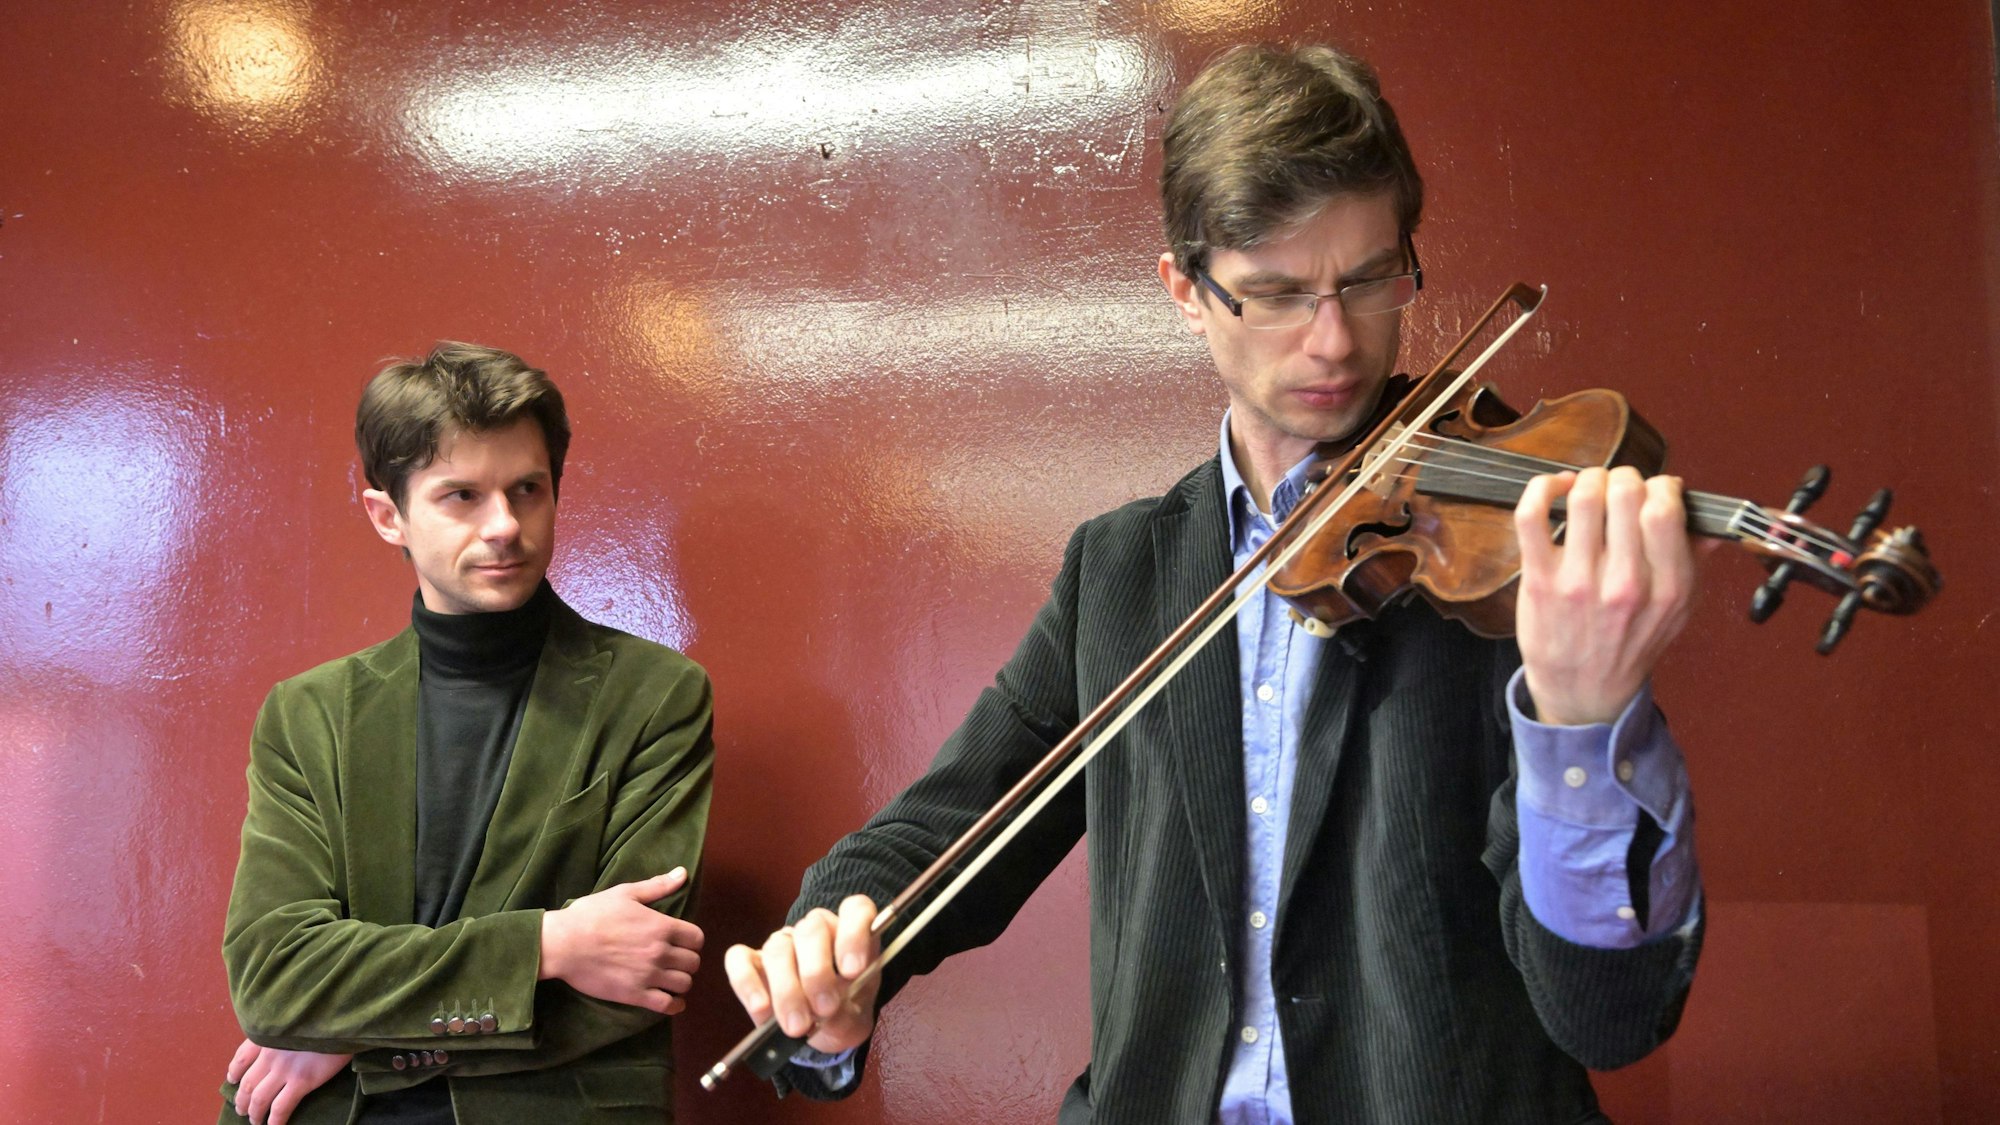 Roman Salyutov steht an einer Wand hinter Alexander Lifland, der auf der historischen Geige spielt.